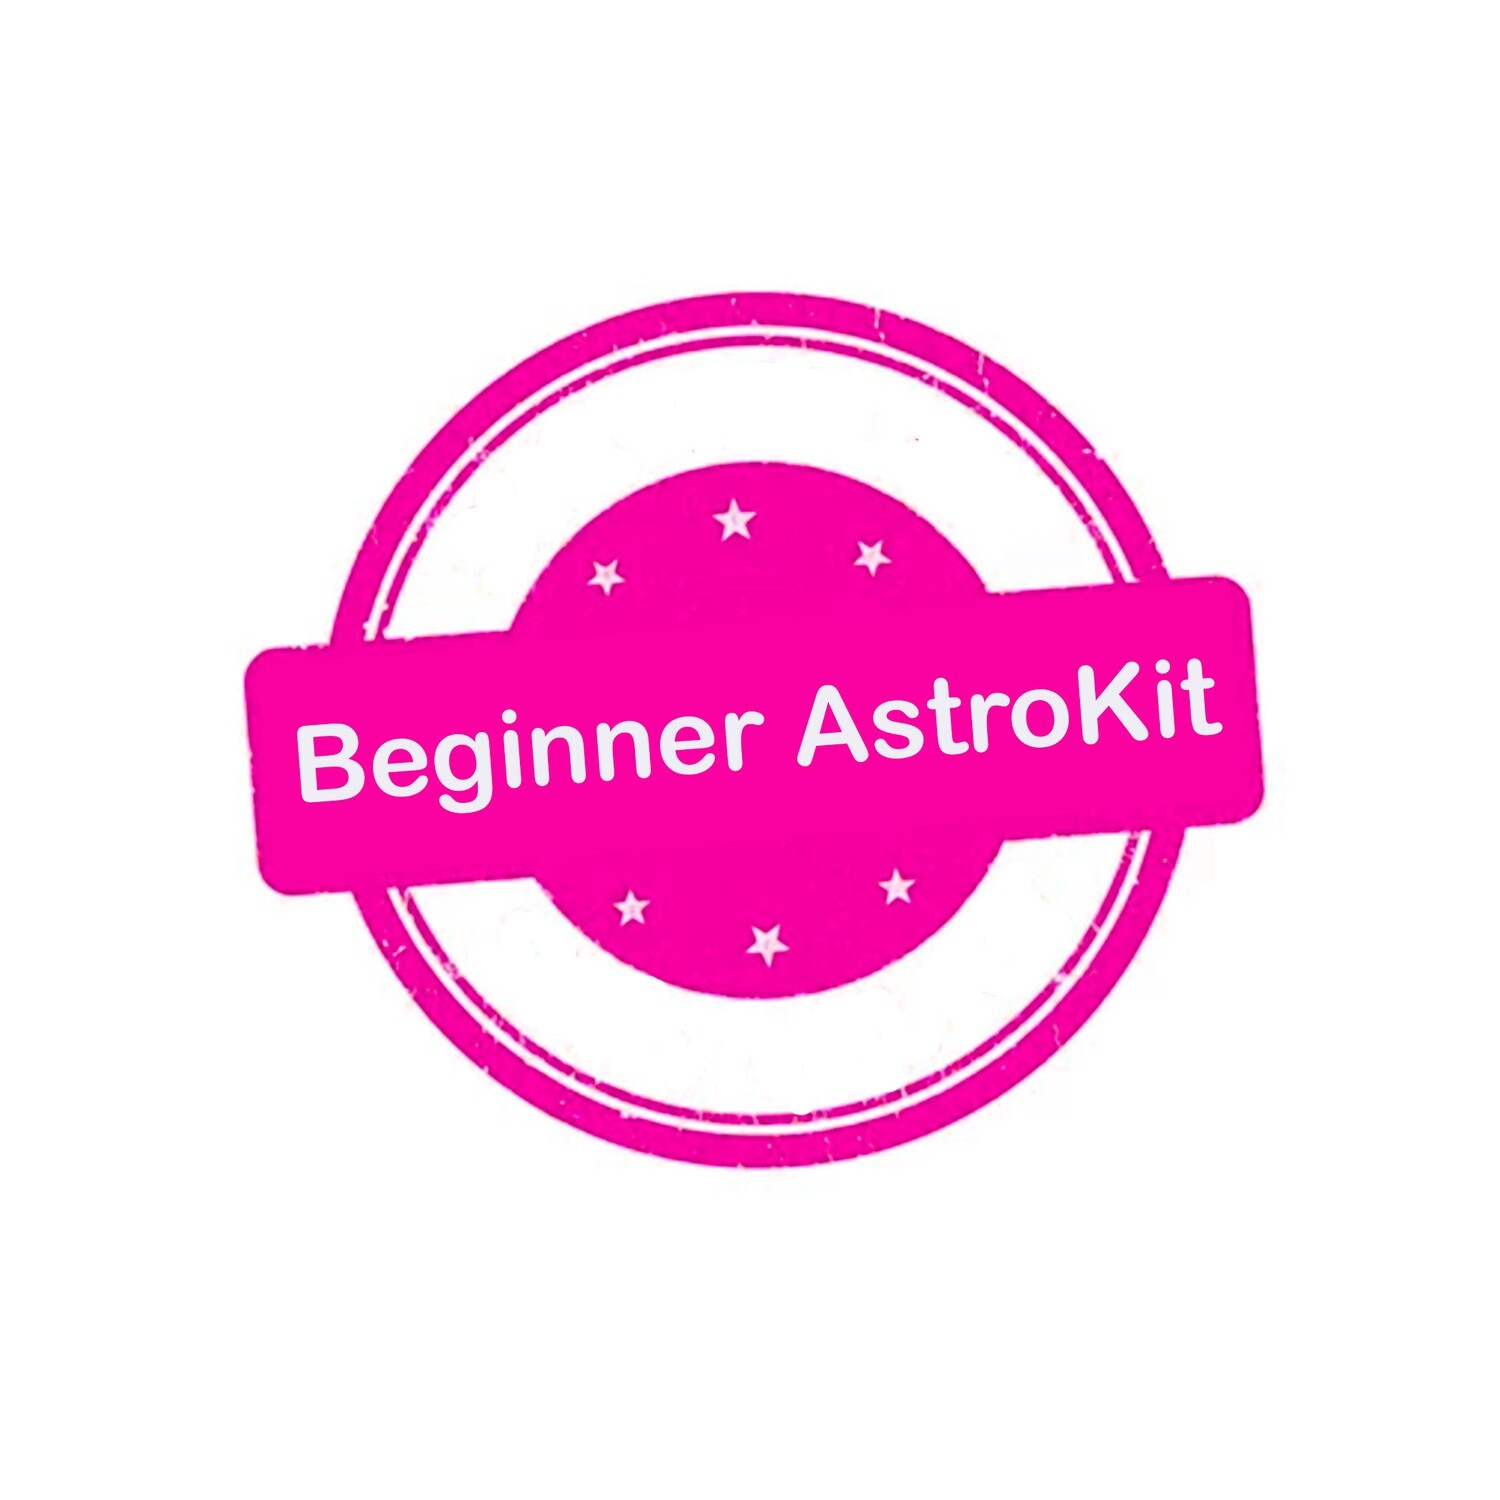 Beginner Astrokit